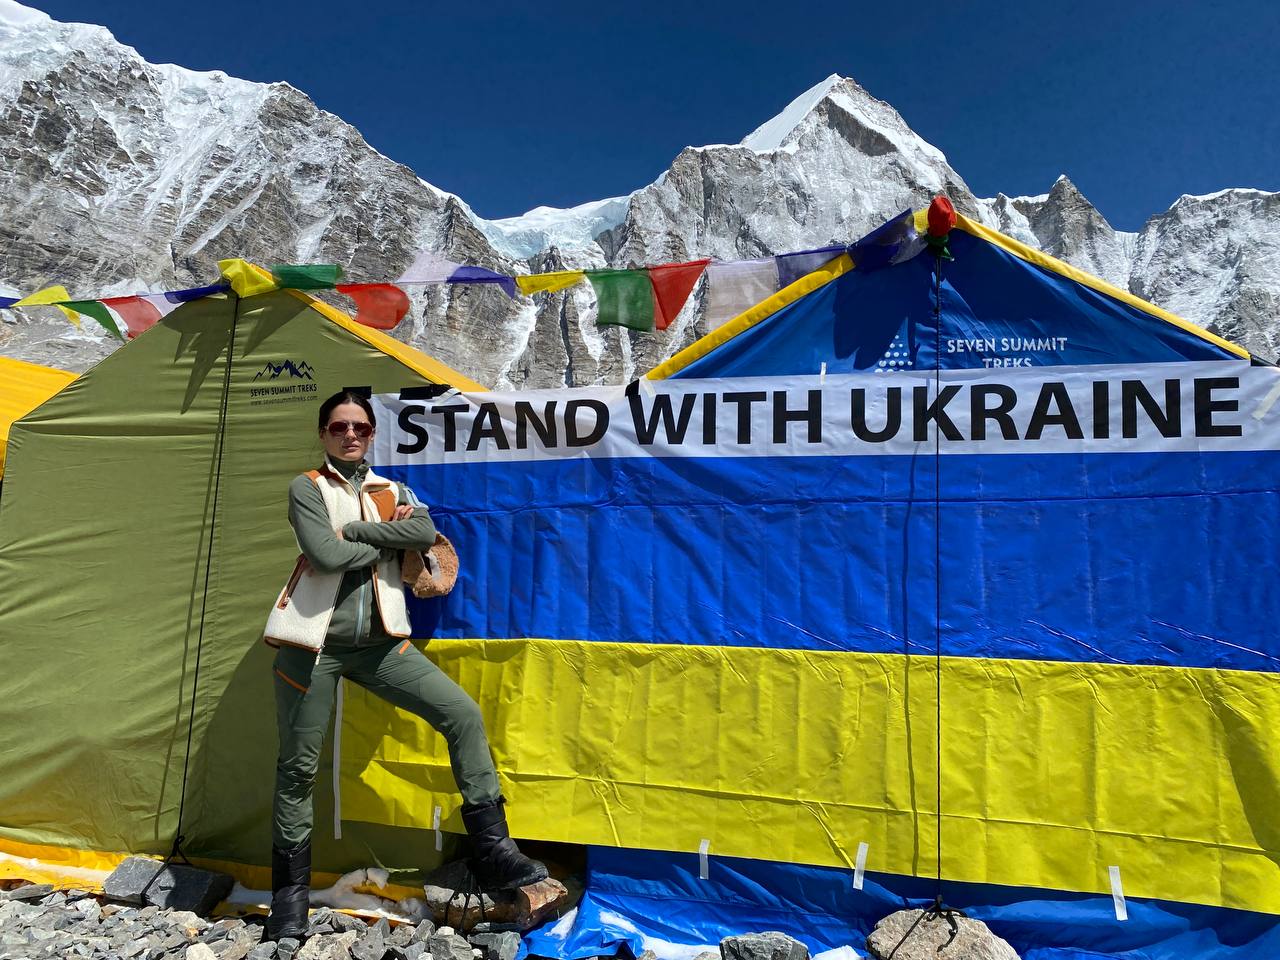 Подъем ценой в жизнь. Как украинская альпинистка планирует покорить гору Манаслу